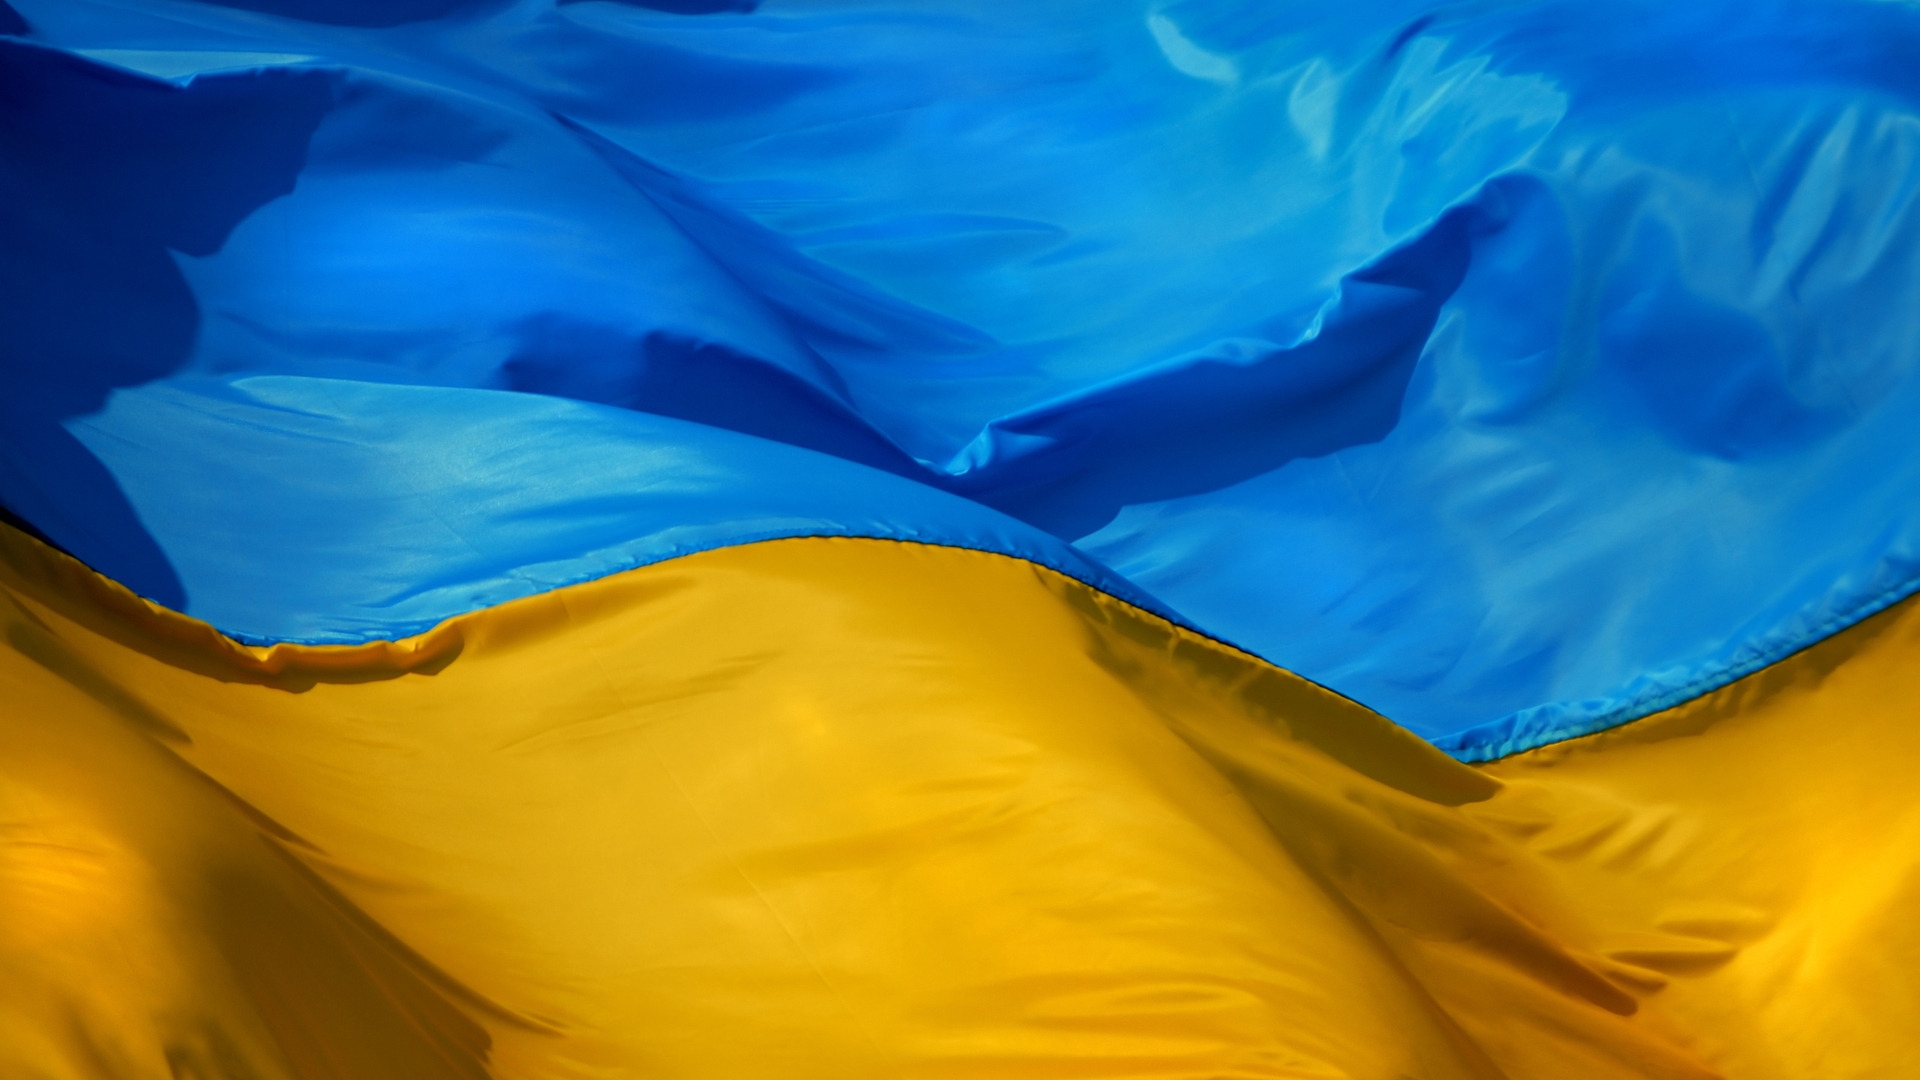 Ukraine Flag for 1920 x 1080 HDTV 1080p resolution